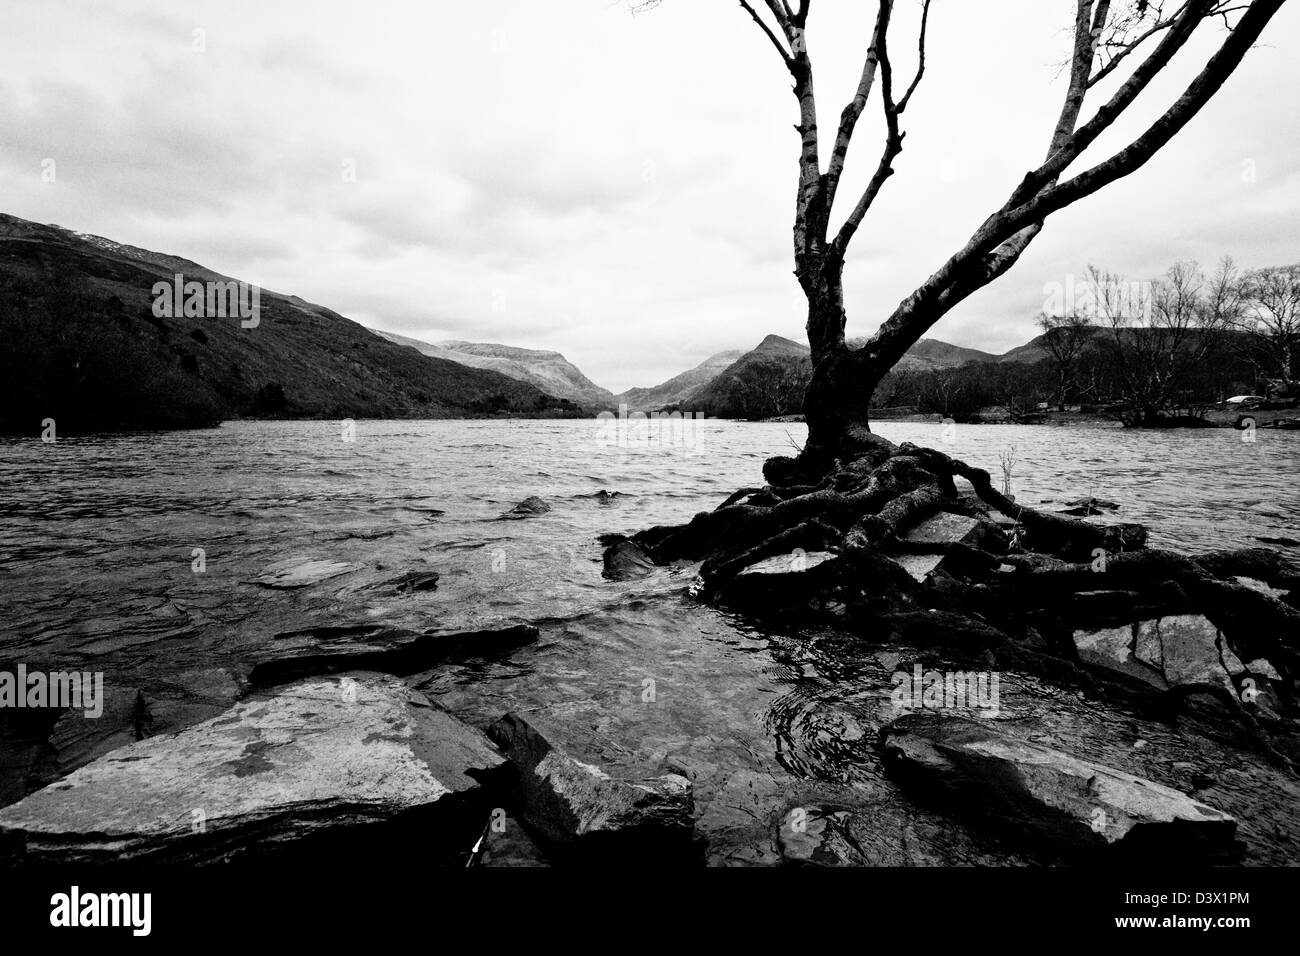 Dead tree next to a lake in Wales, Llyn Padarn Stock Photo